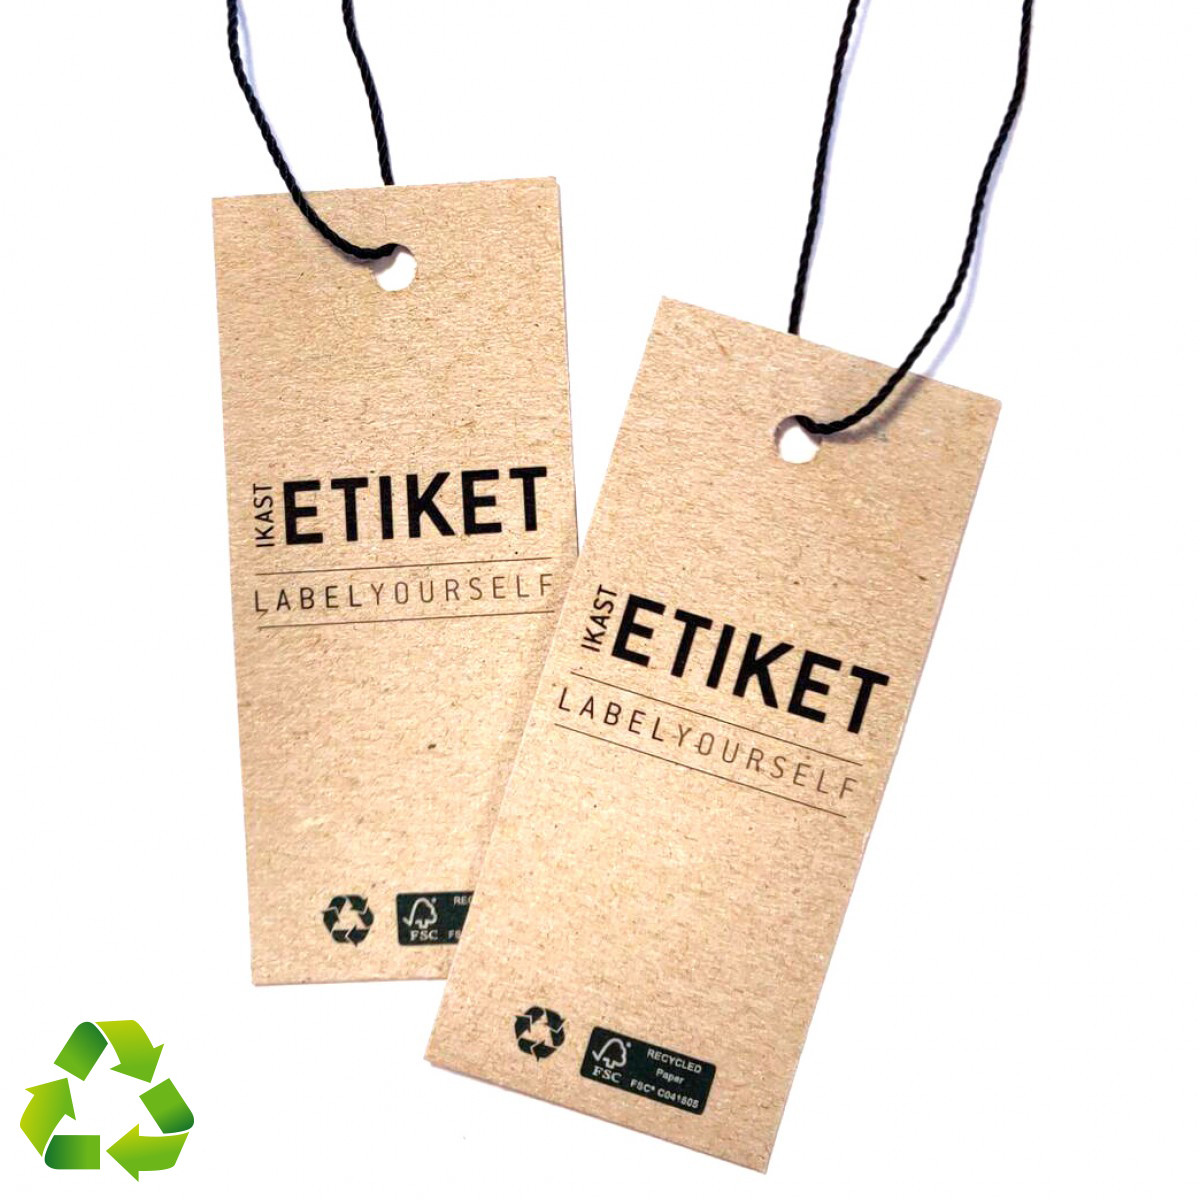 Etiquetas colgantes sostenibles fabricadas con papel con certificación